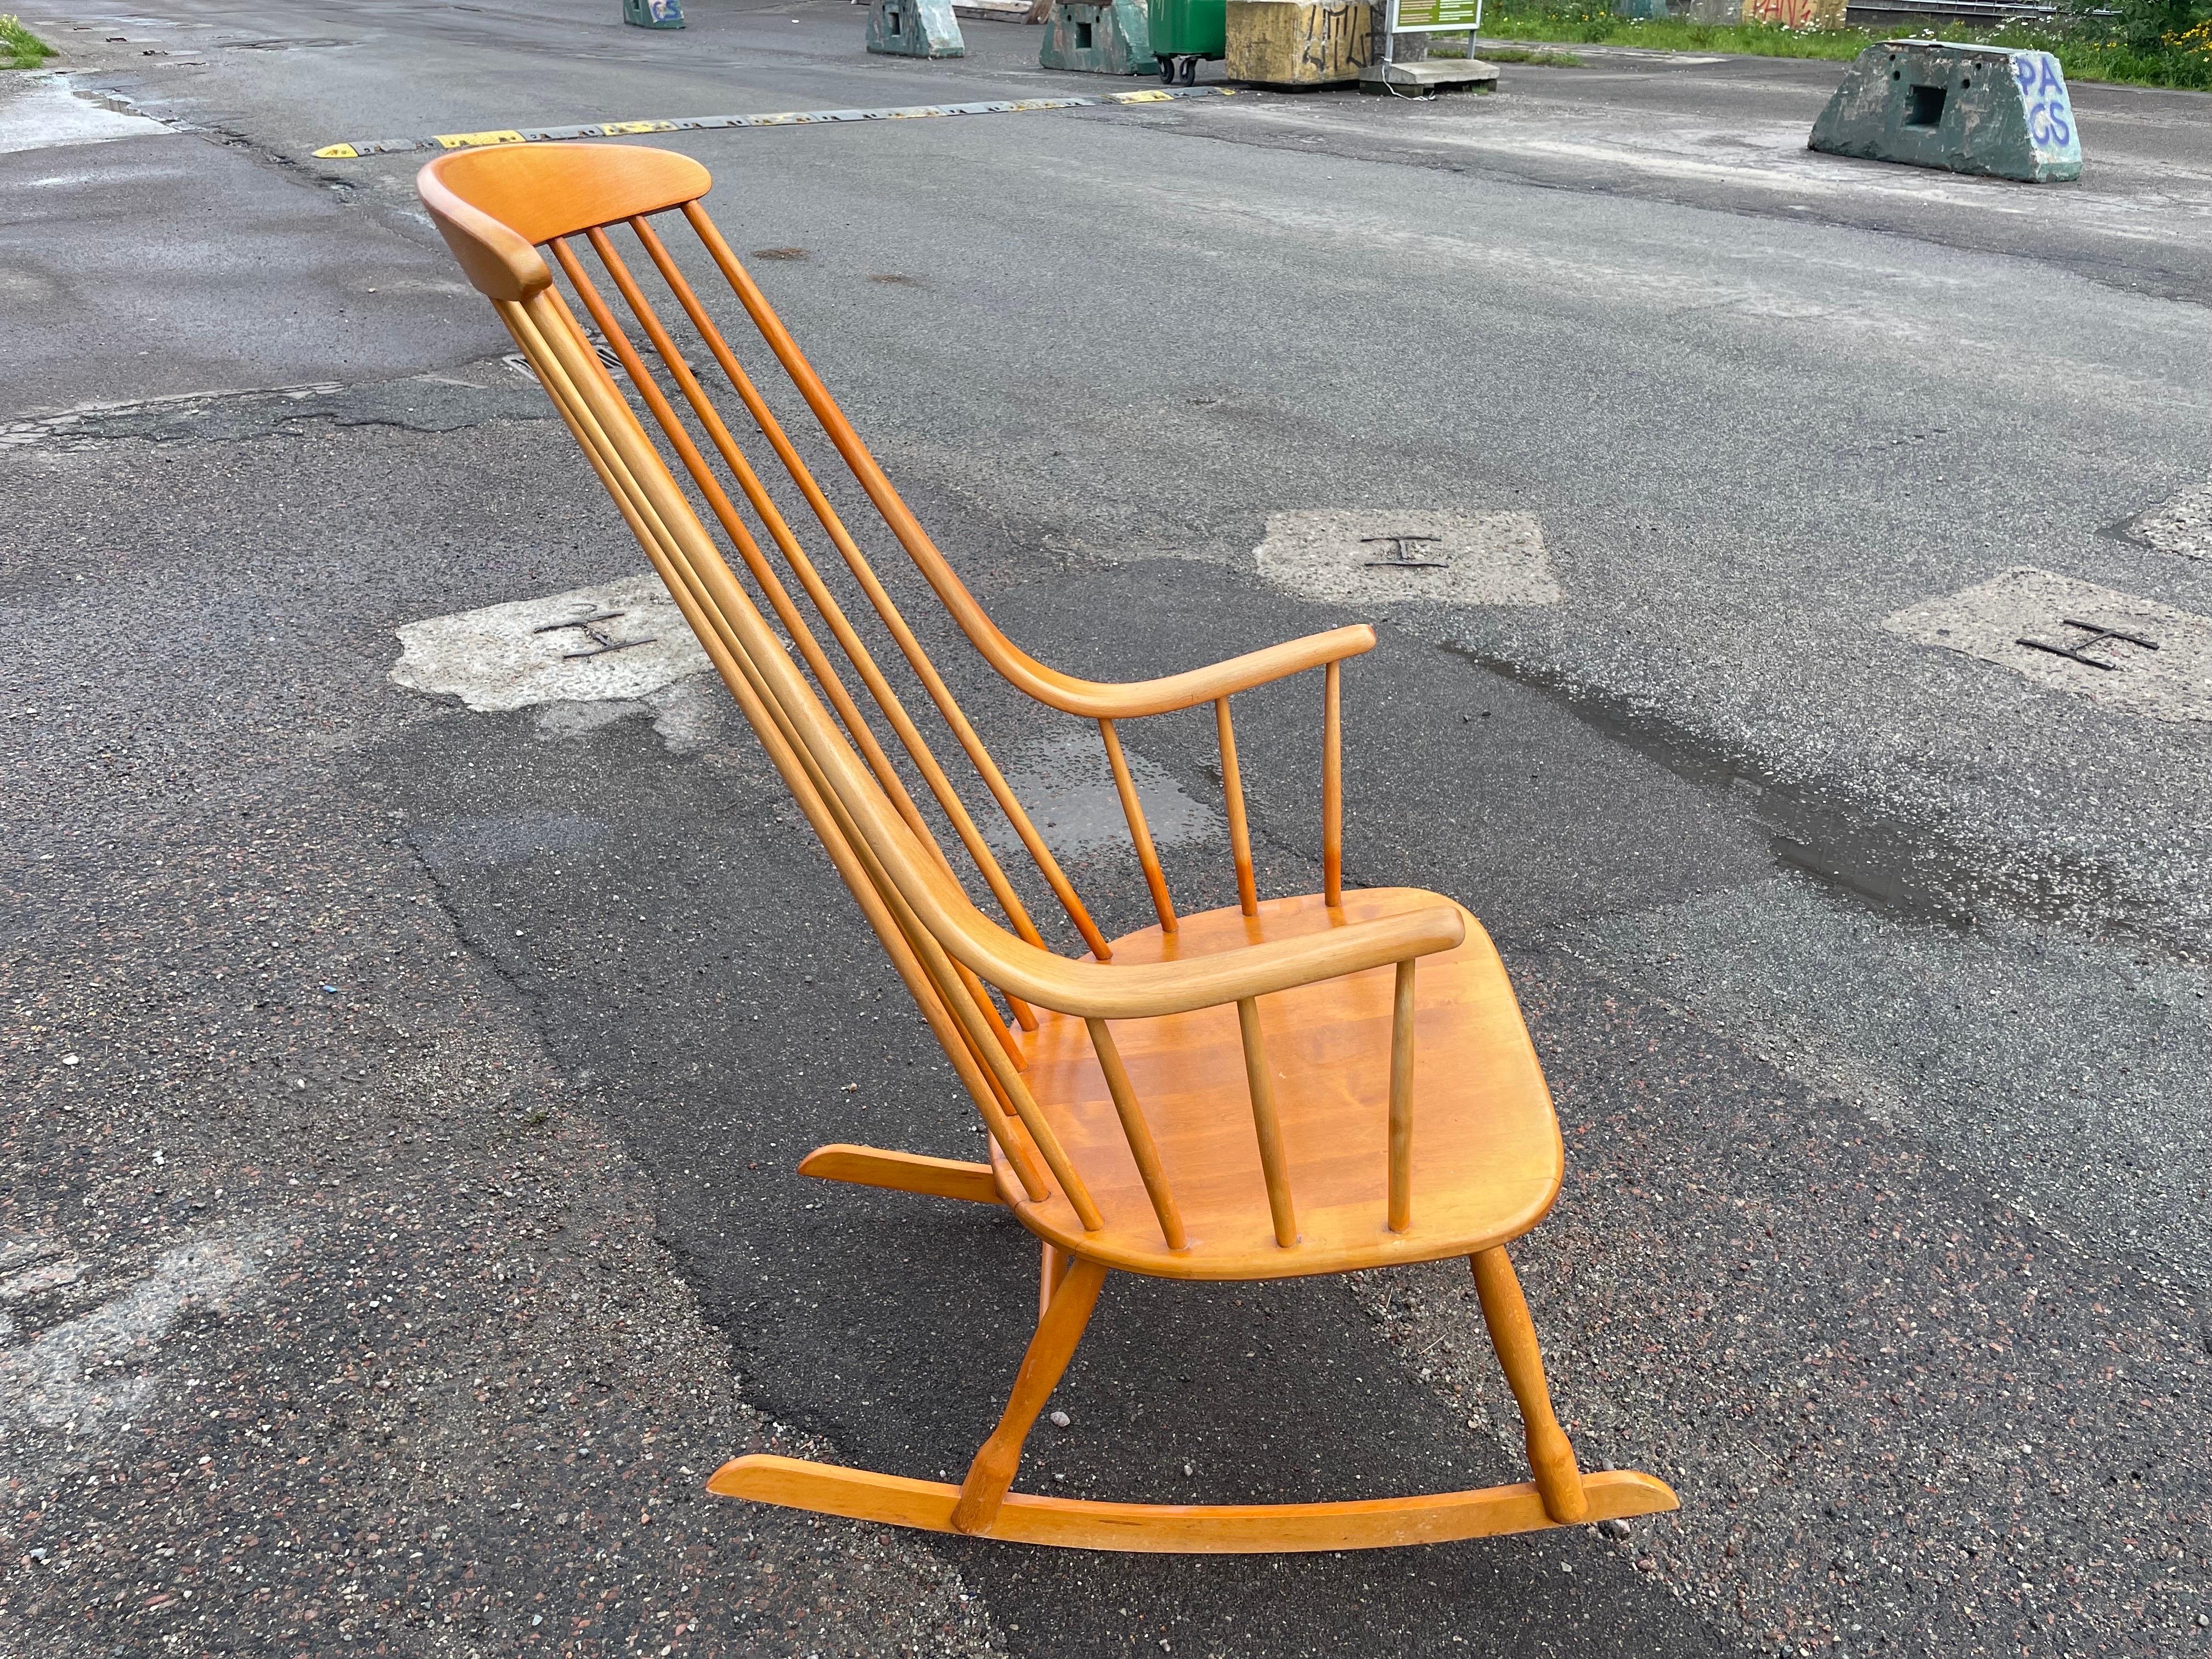 Der Schaukelstuhl Grandessa wurde in den 1960er Jahren von Lena Larsson für die schwedische Manufaktur Nesto entworfen. Der Sessel ist aus Buchenholz gefertigt.  Die hohe Rückenlehne geht nahtlos in die Armlehnen über. Die Struktur ist so